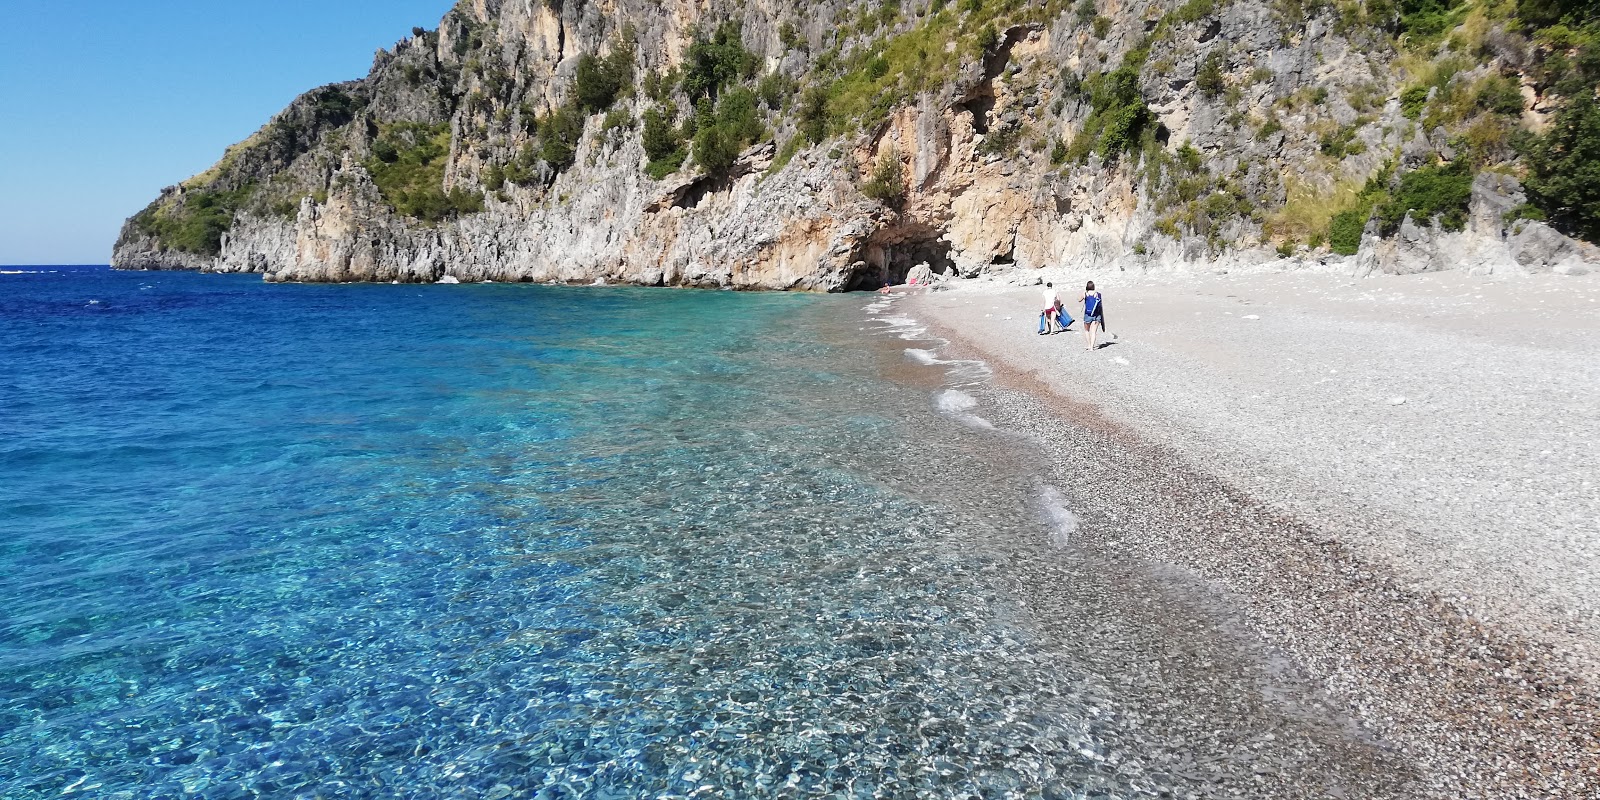 Photo of Spiaggia della Sciabica with gray pebble surface